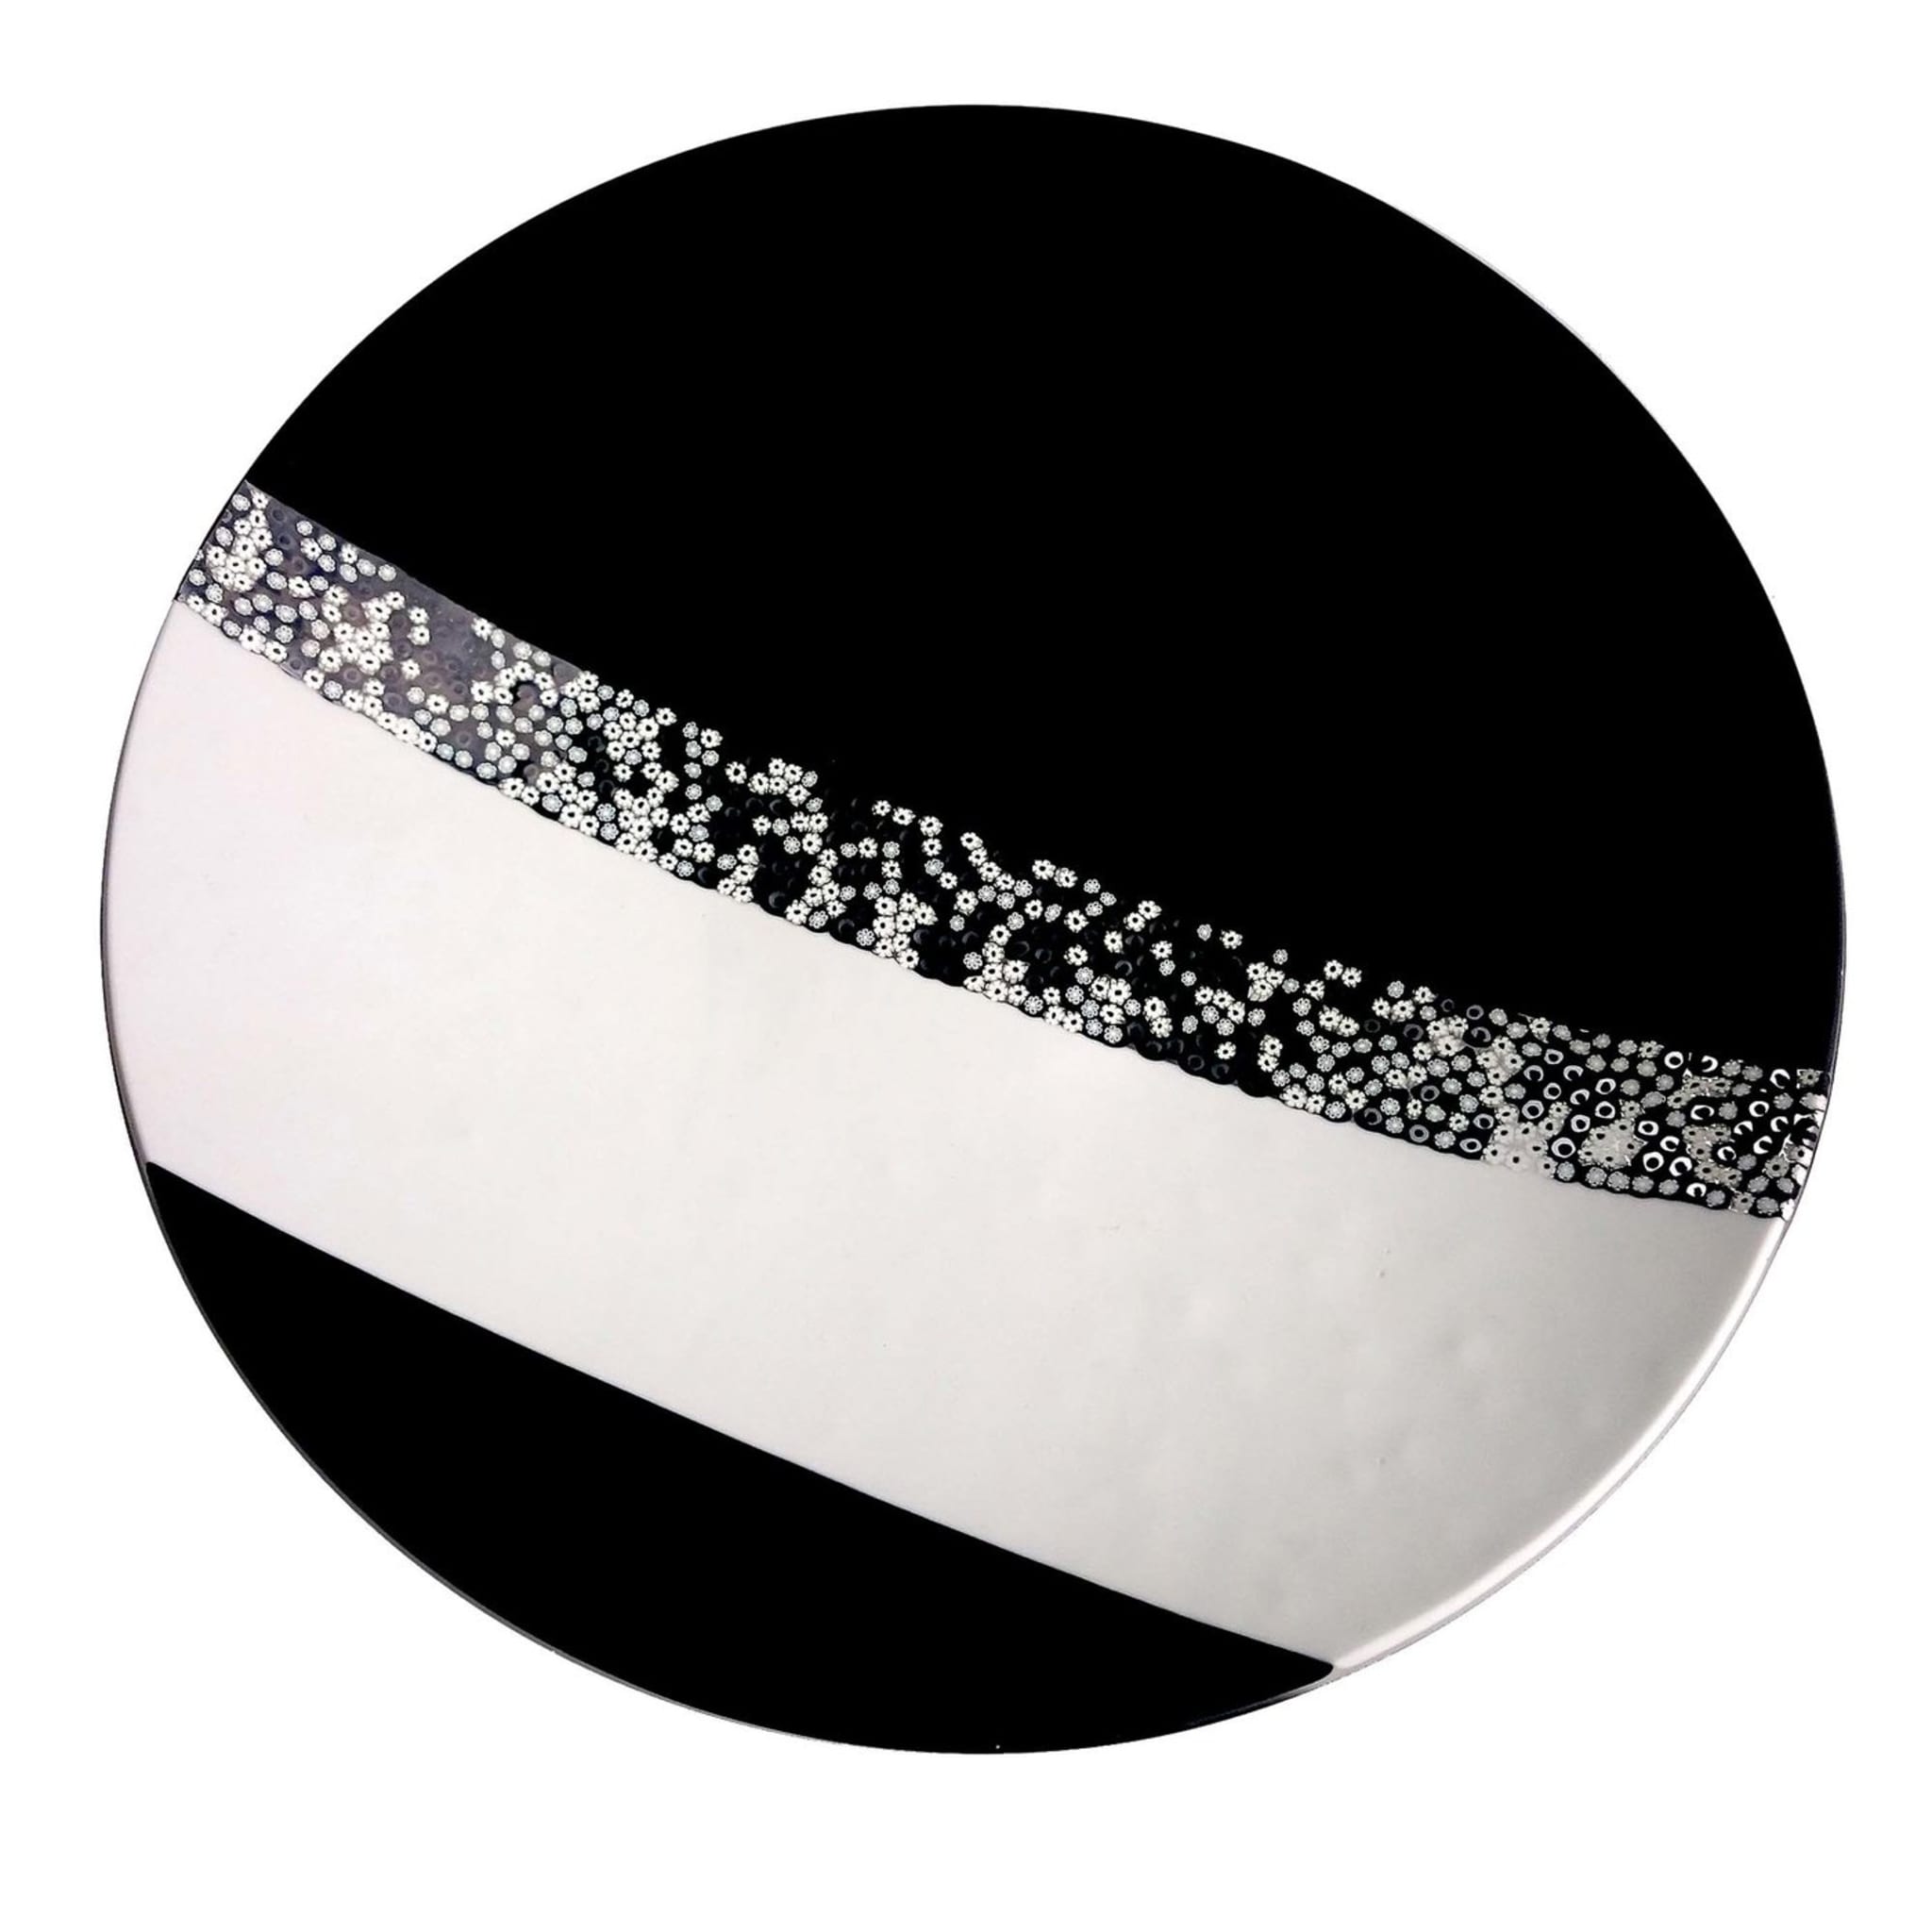 Black & White Murano Glass Decorative Plate by Andrea Orso - Main view